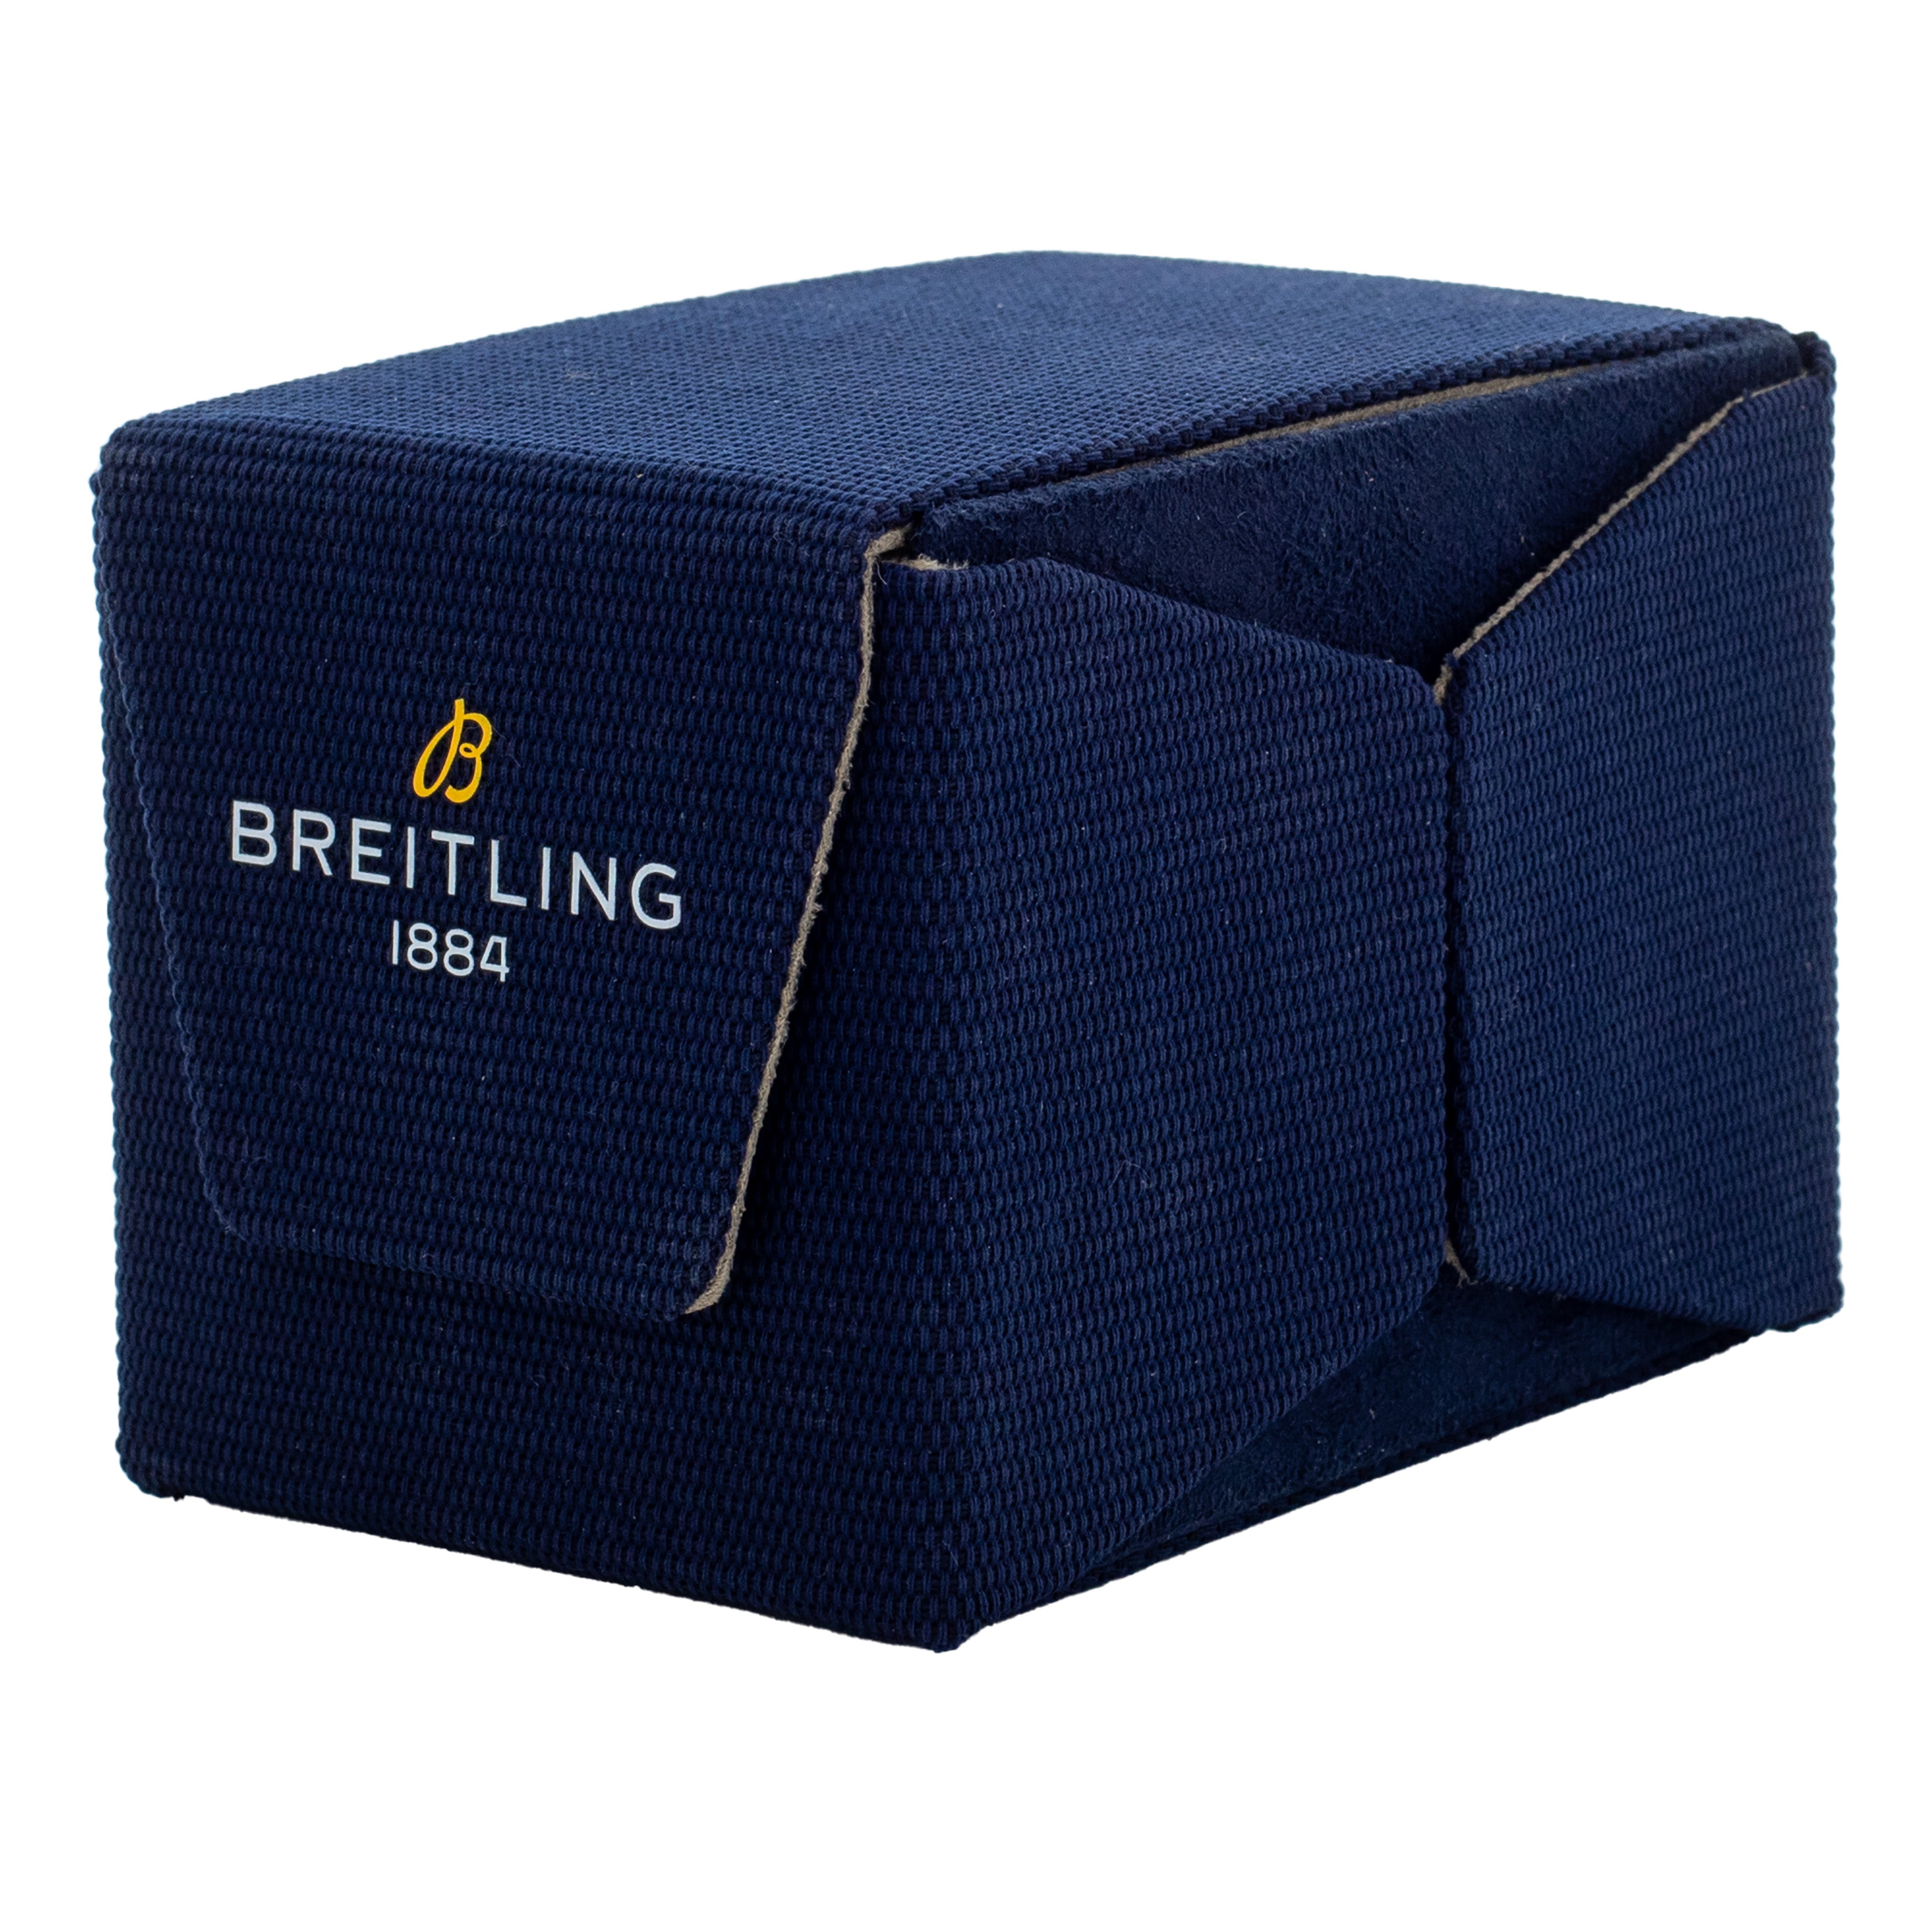 Breitling Navitimer B01 Chronograph Stainless Steel Salmon Dial 43mm AB0138 Full Set